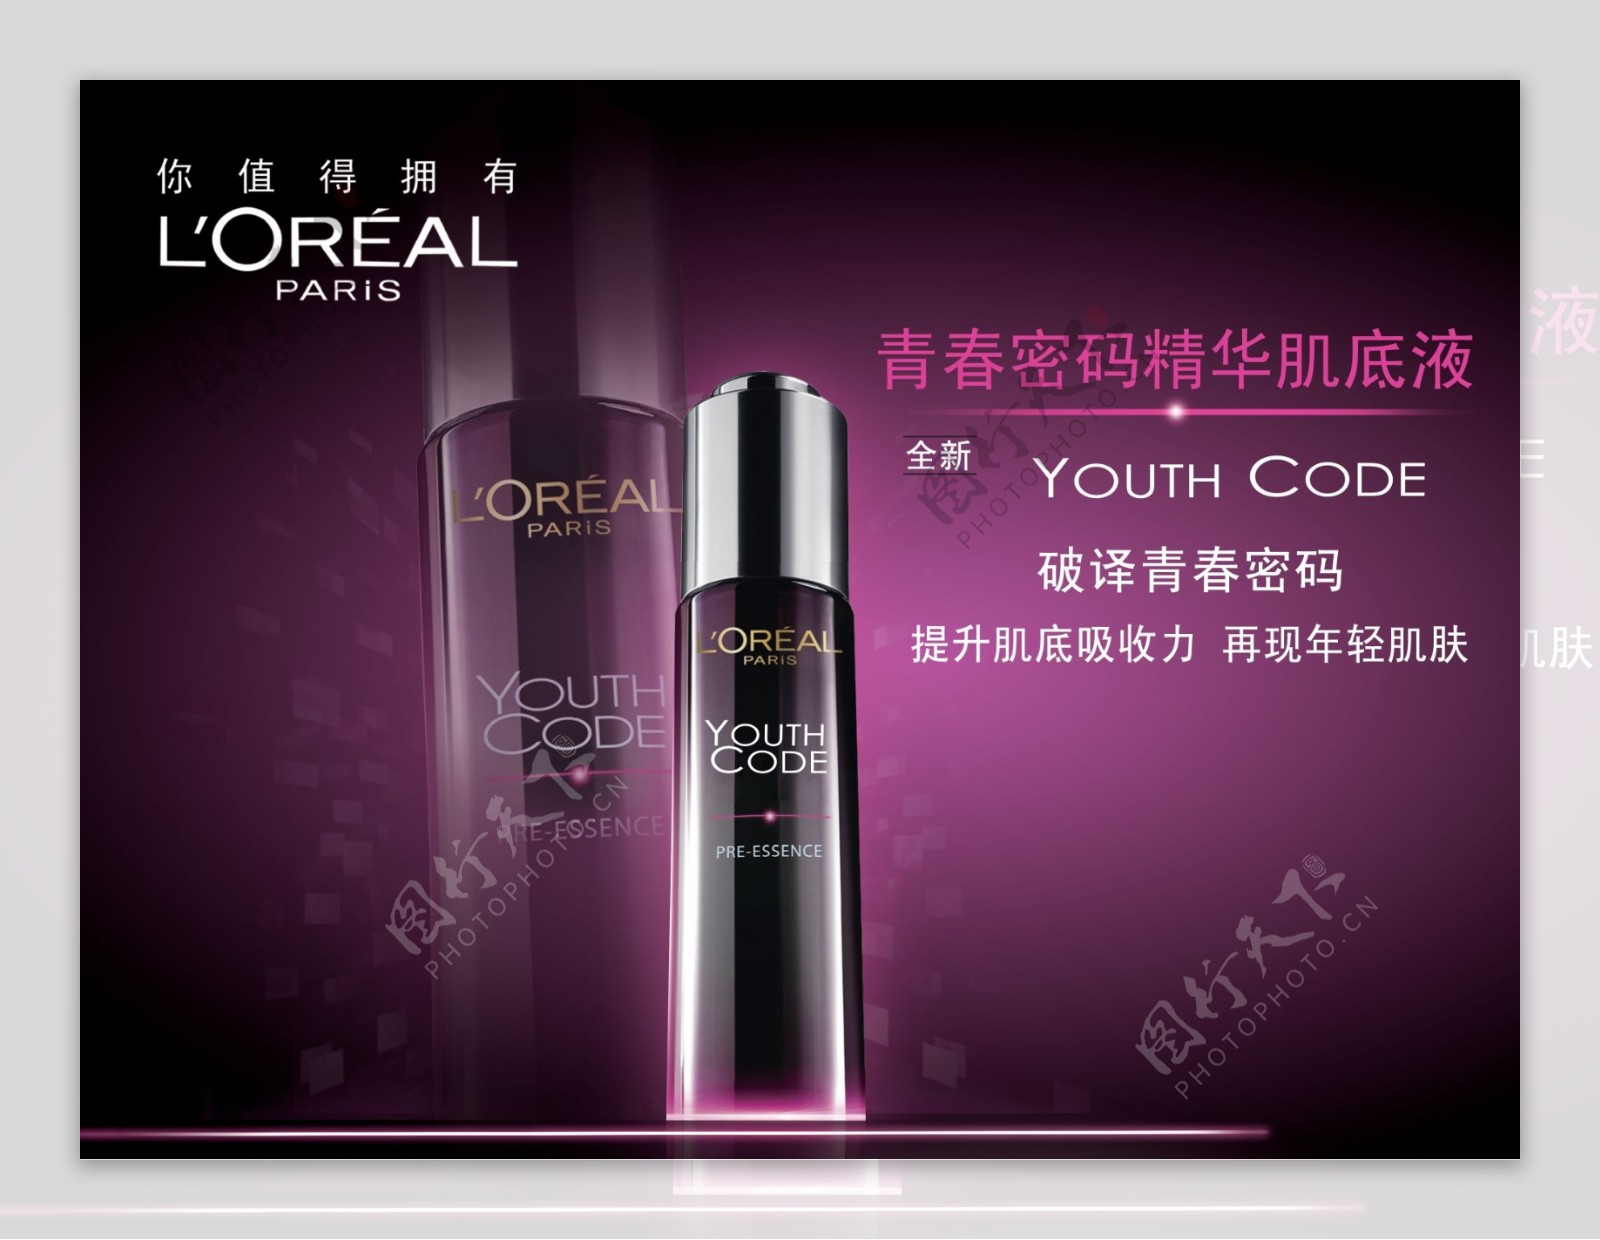 青春密码黑精华 - teehee - Client: L’Oréal Paris